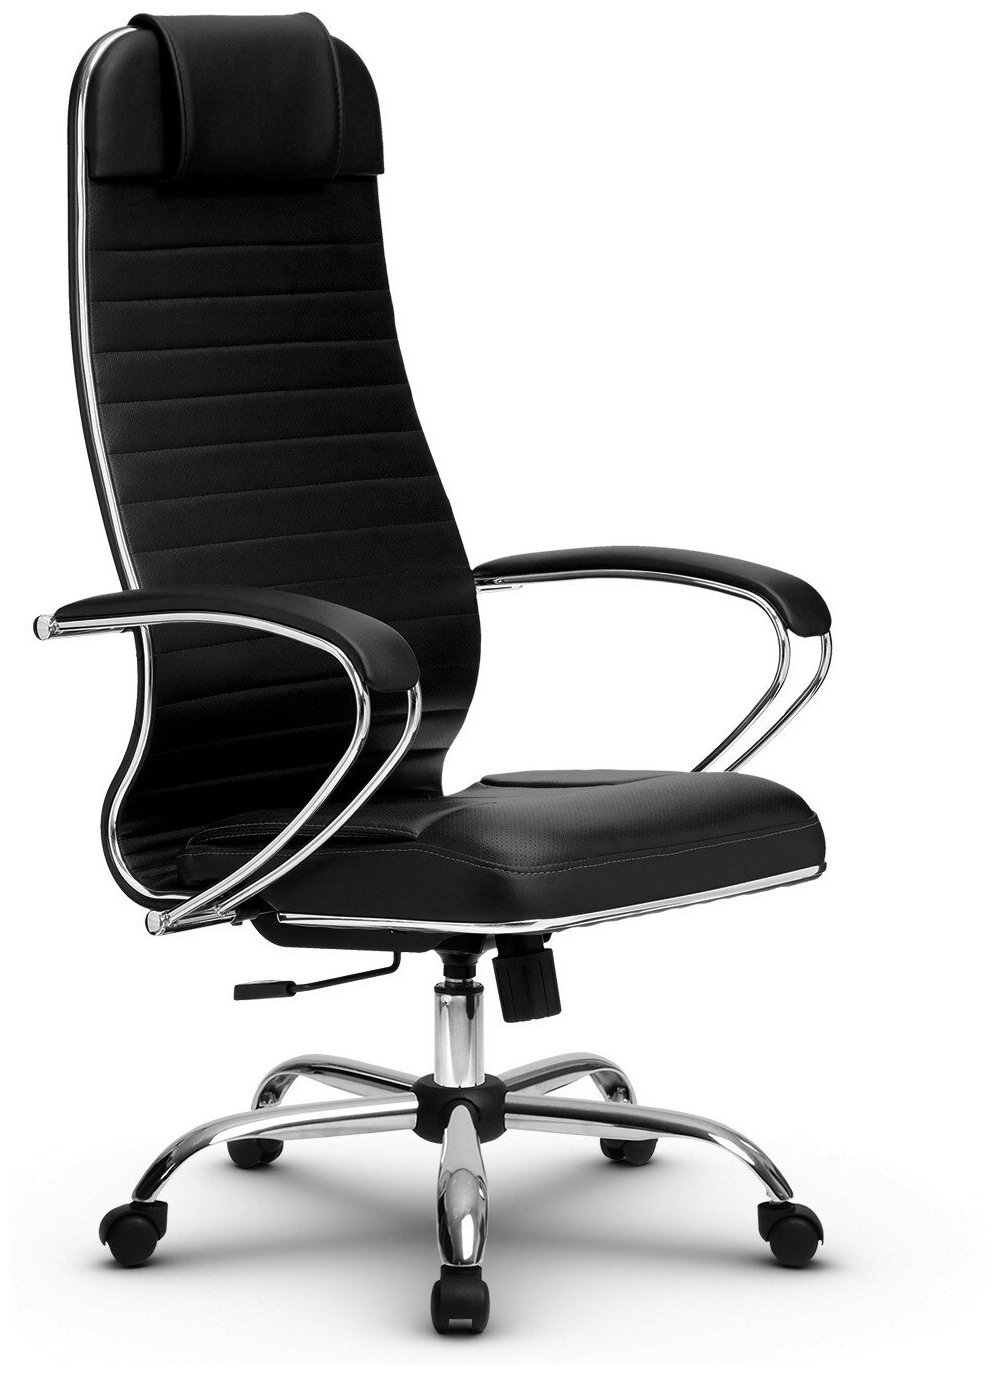 Эргономичное кресло руководителя Метта комплект 6 черное ch